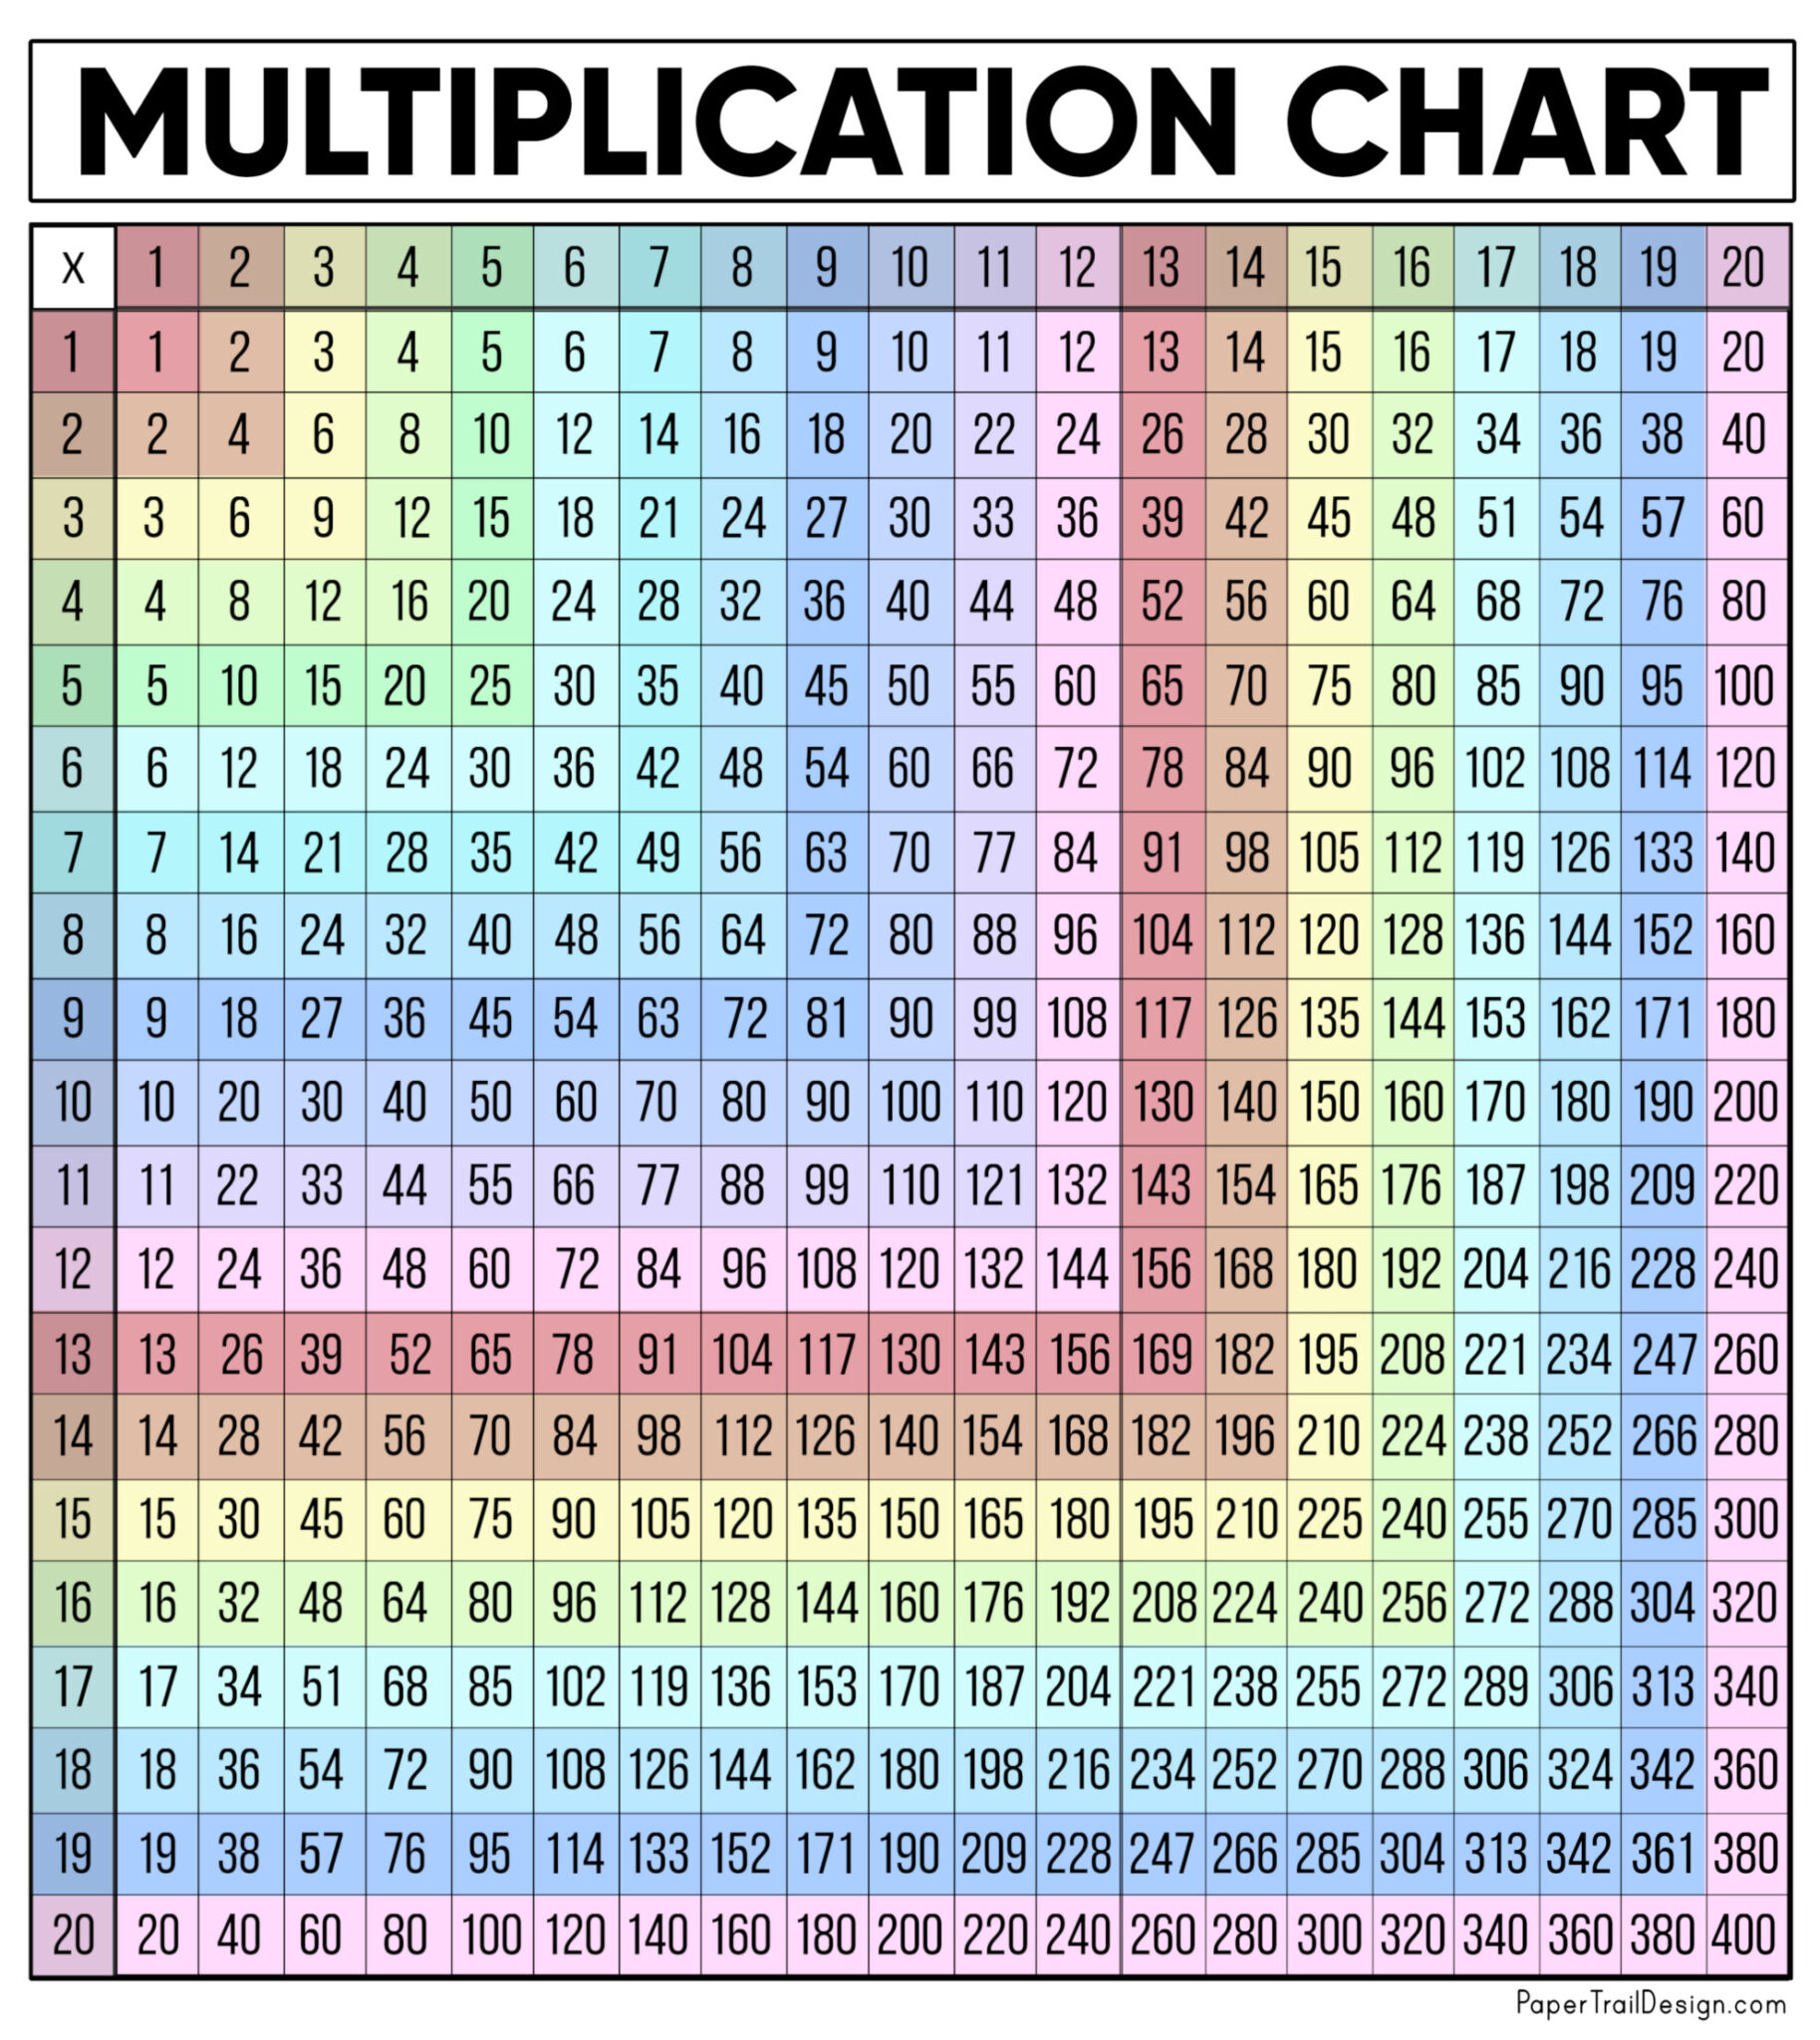 free-printable-color-multiplication-chart-1-12-printable